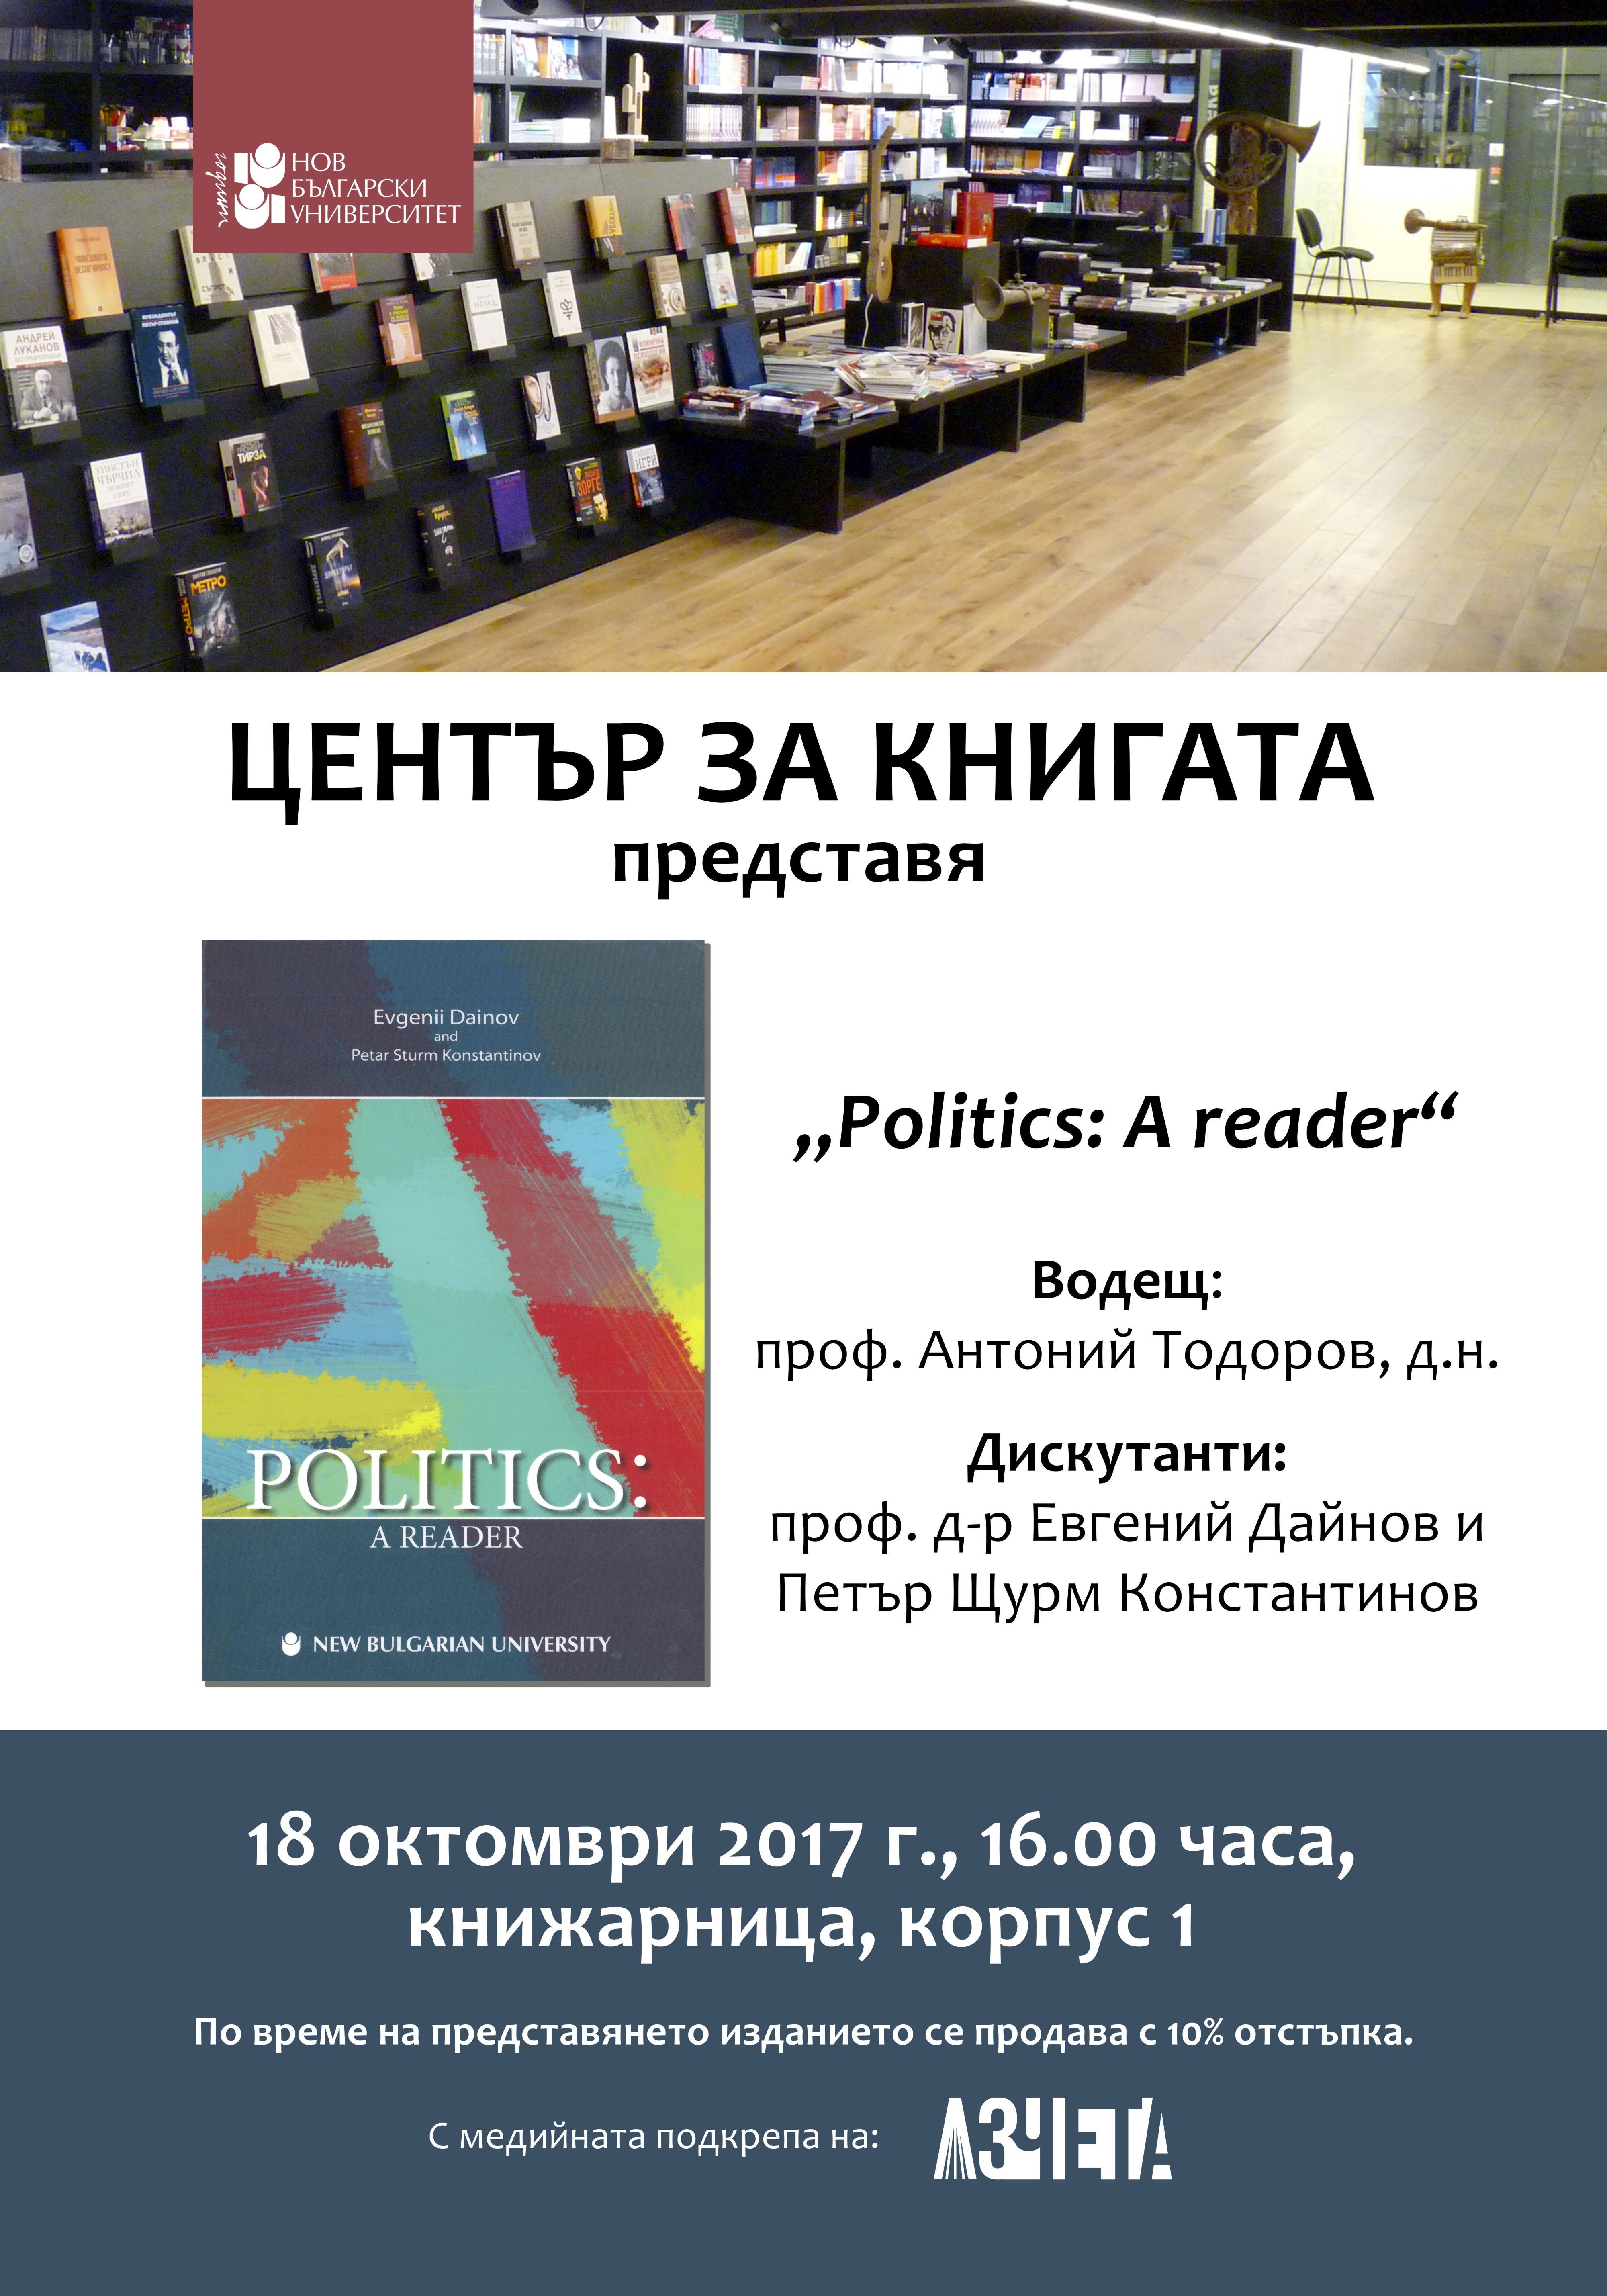 Представяне на книгата „Politics: A reader“